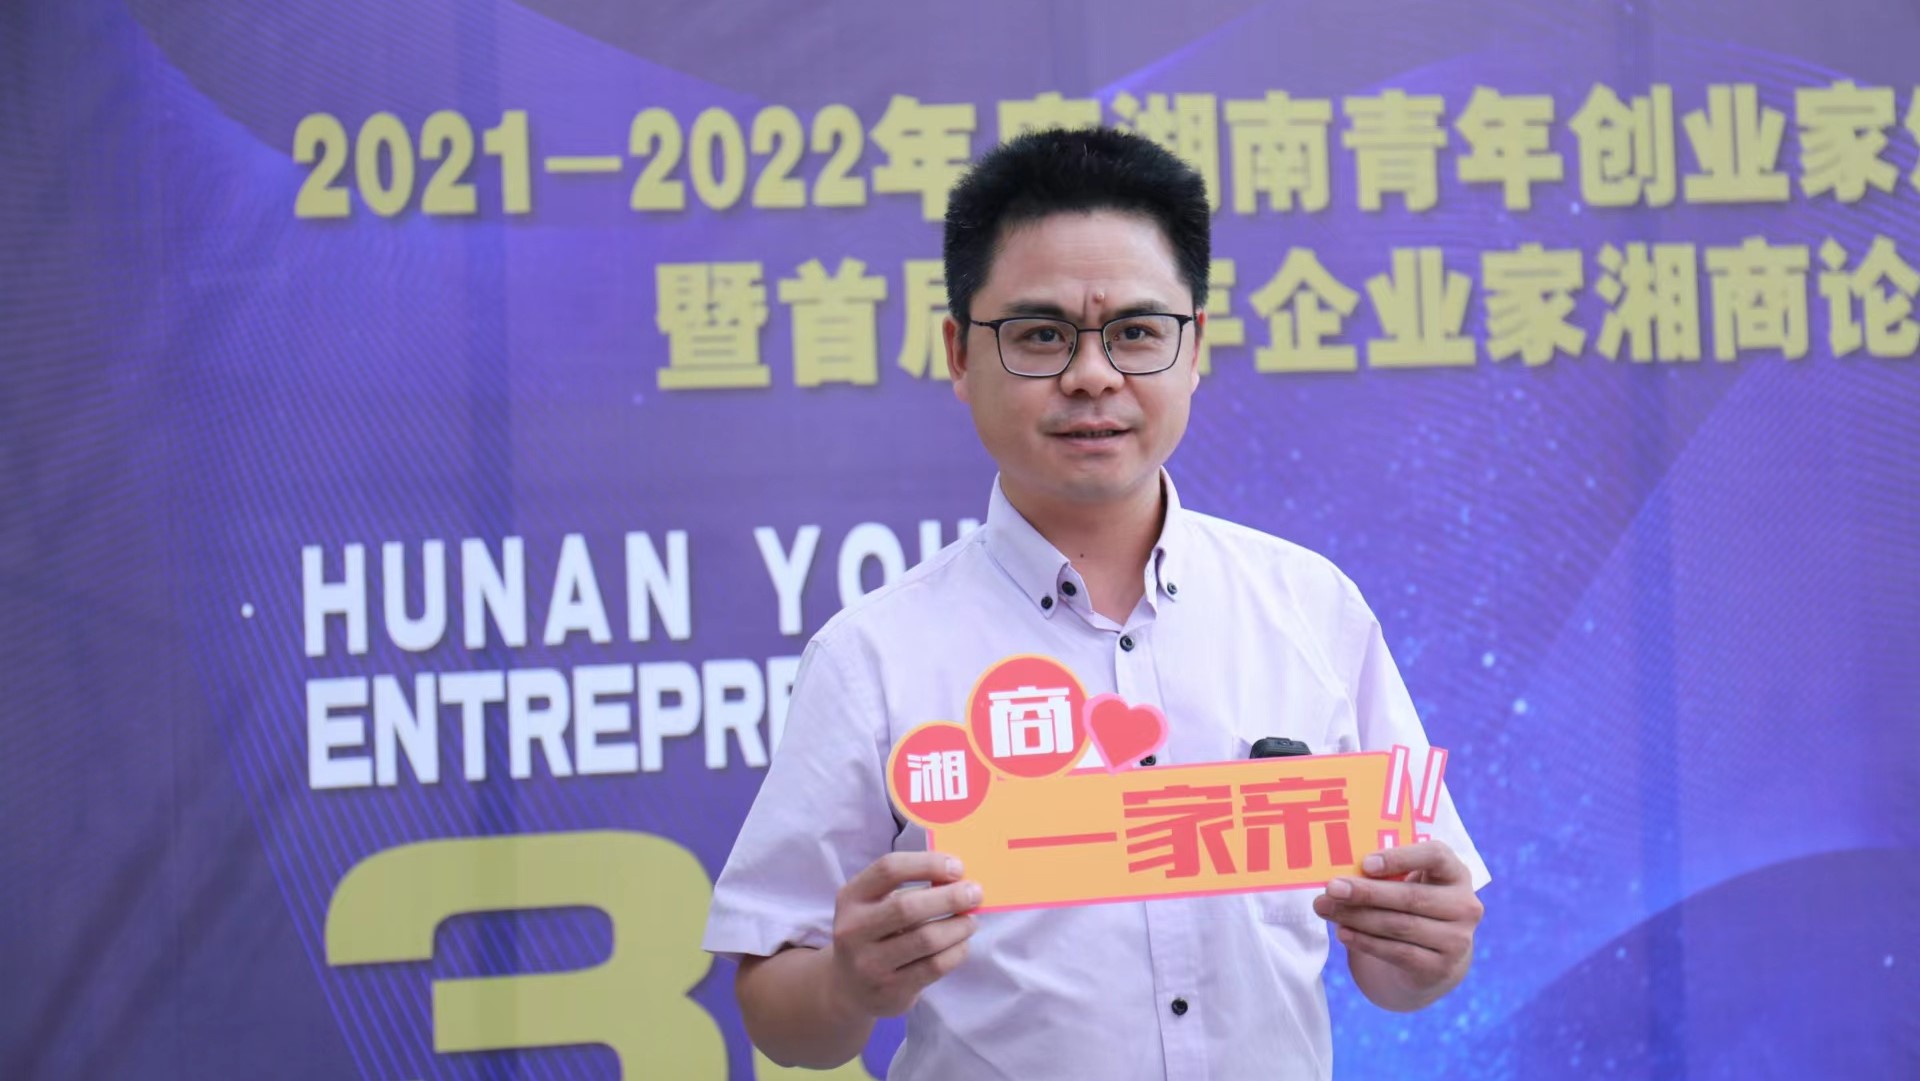 品上硬质合金何志平被授予“2021-2022年度湖南青年创业家”奖